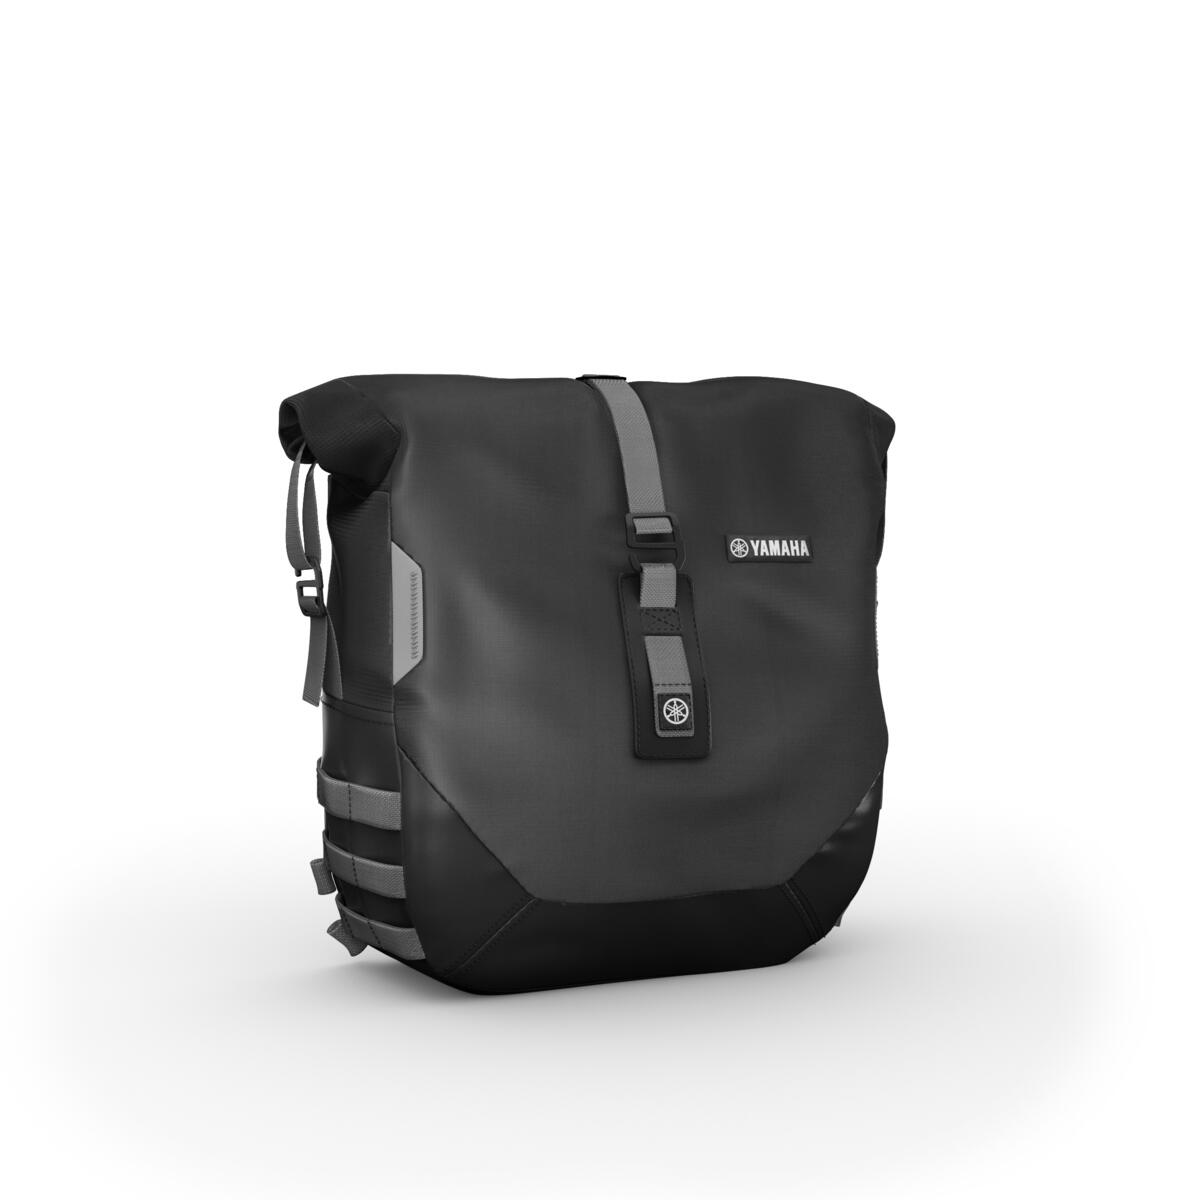 A Weekend Pack túracsomaggal hosszú utakra is alkalmas, ideális Roadstert varázsolhatsz az XSR900-ból. A két, egyenként 13,5 literes, 5 kilogramm teherbírású, oldaltáskával a hosszabb utazáshoz szükséges dolgokat kényelmesen magaddal viheted. A táskákba vízálló bélés is tehető, amely védelmet nyújt kedvezőtlen időjárás esetén. A csomaghoz USB-töltő is tartozik, amellyel utazás közben töltheted a navigációt vagy a telefont.